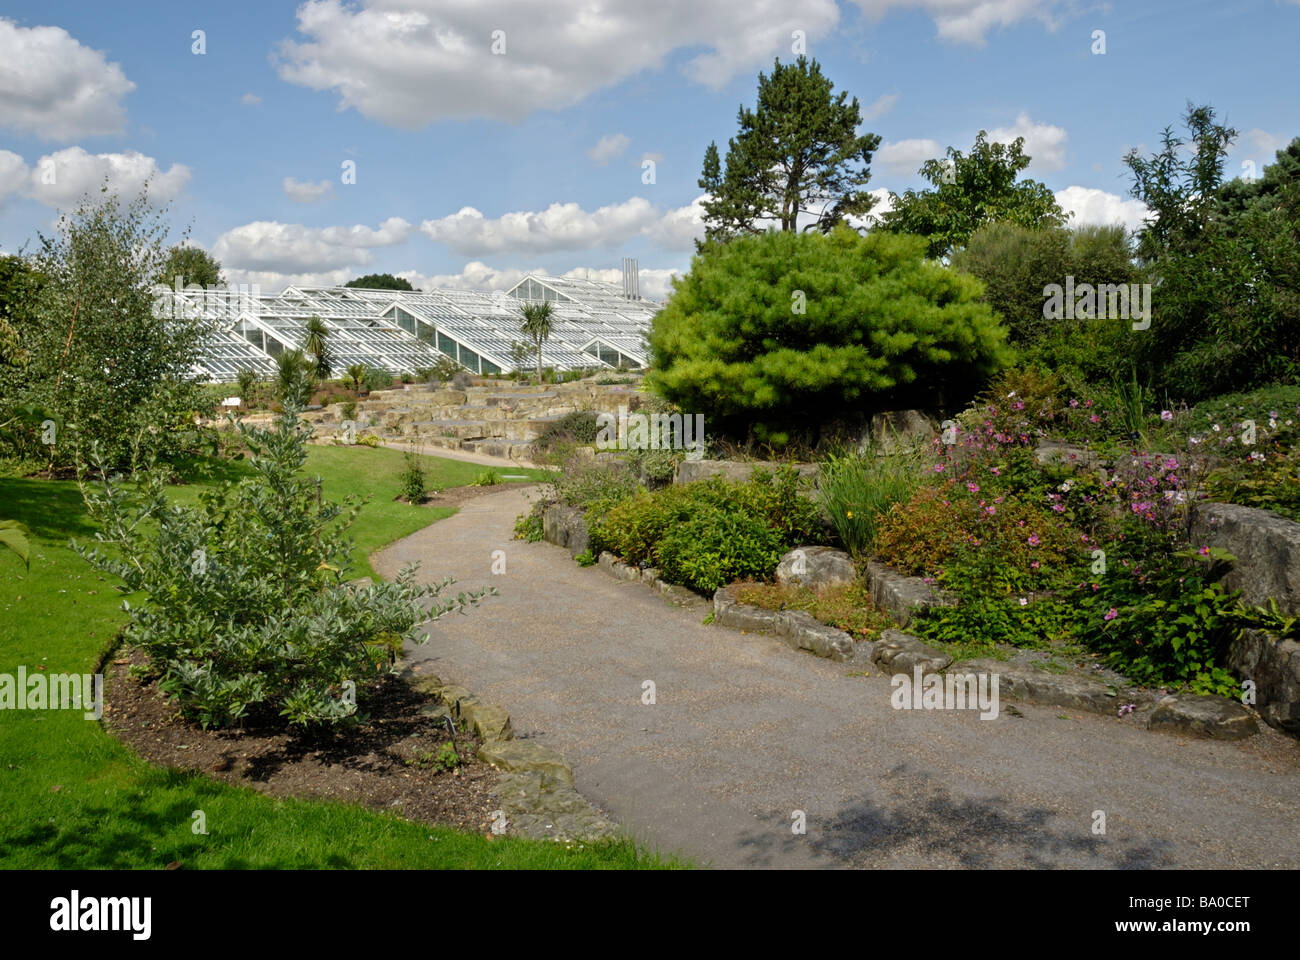 Piétons menant à une serre aux Jardins botaniques royaux de Kew, Londres, Angleterre Banque D'Images